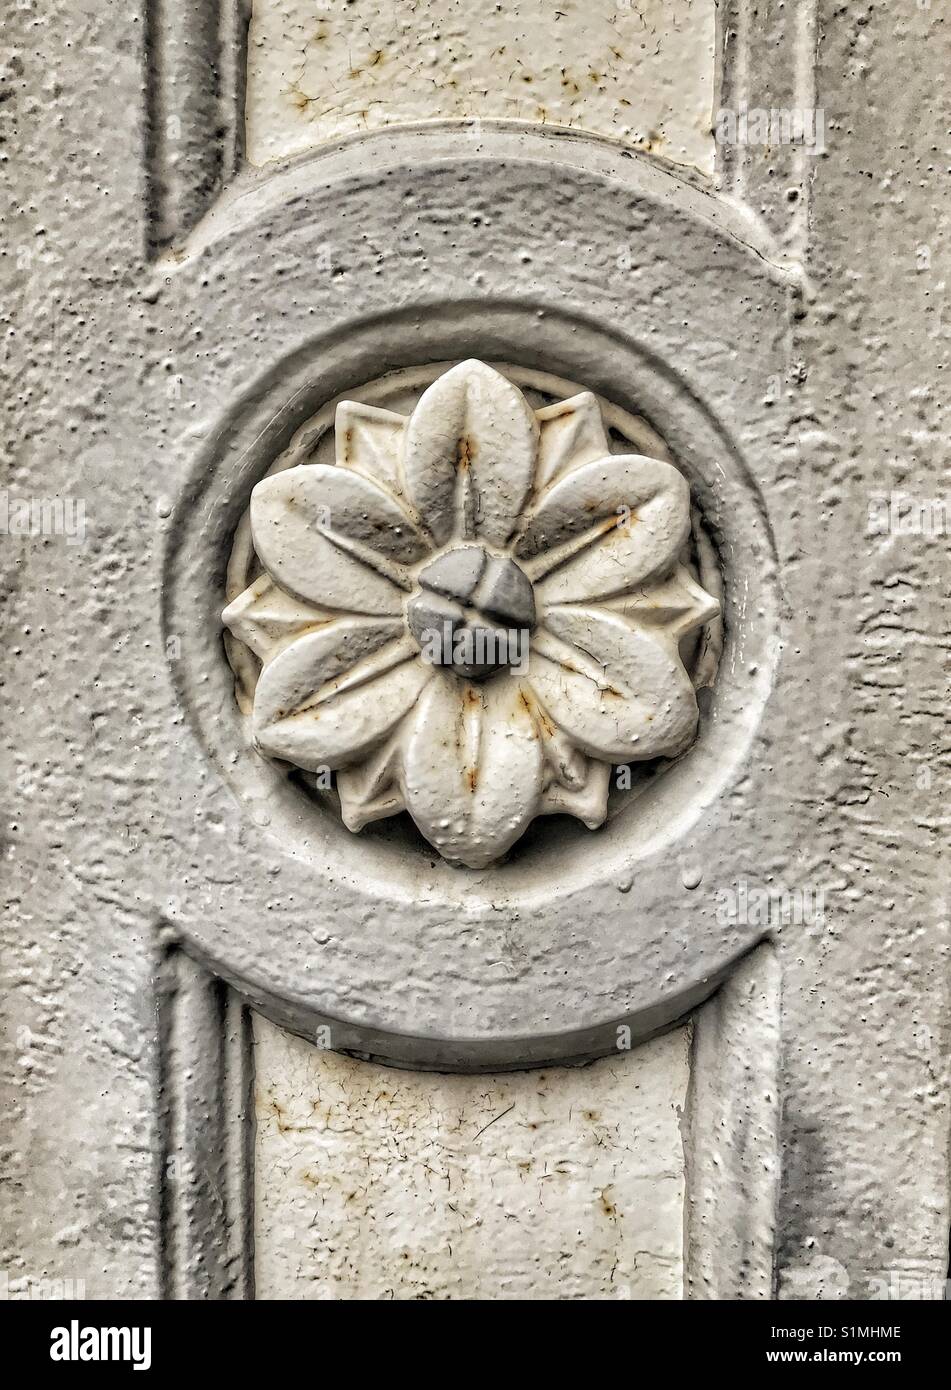 Détail architectural de fleurs sculptées dans la pierre. Texture rugueuse et symétrie. Banque D'Images